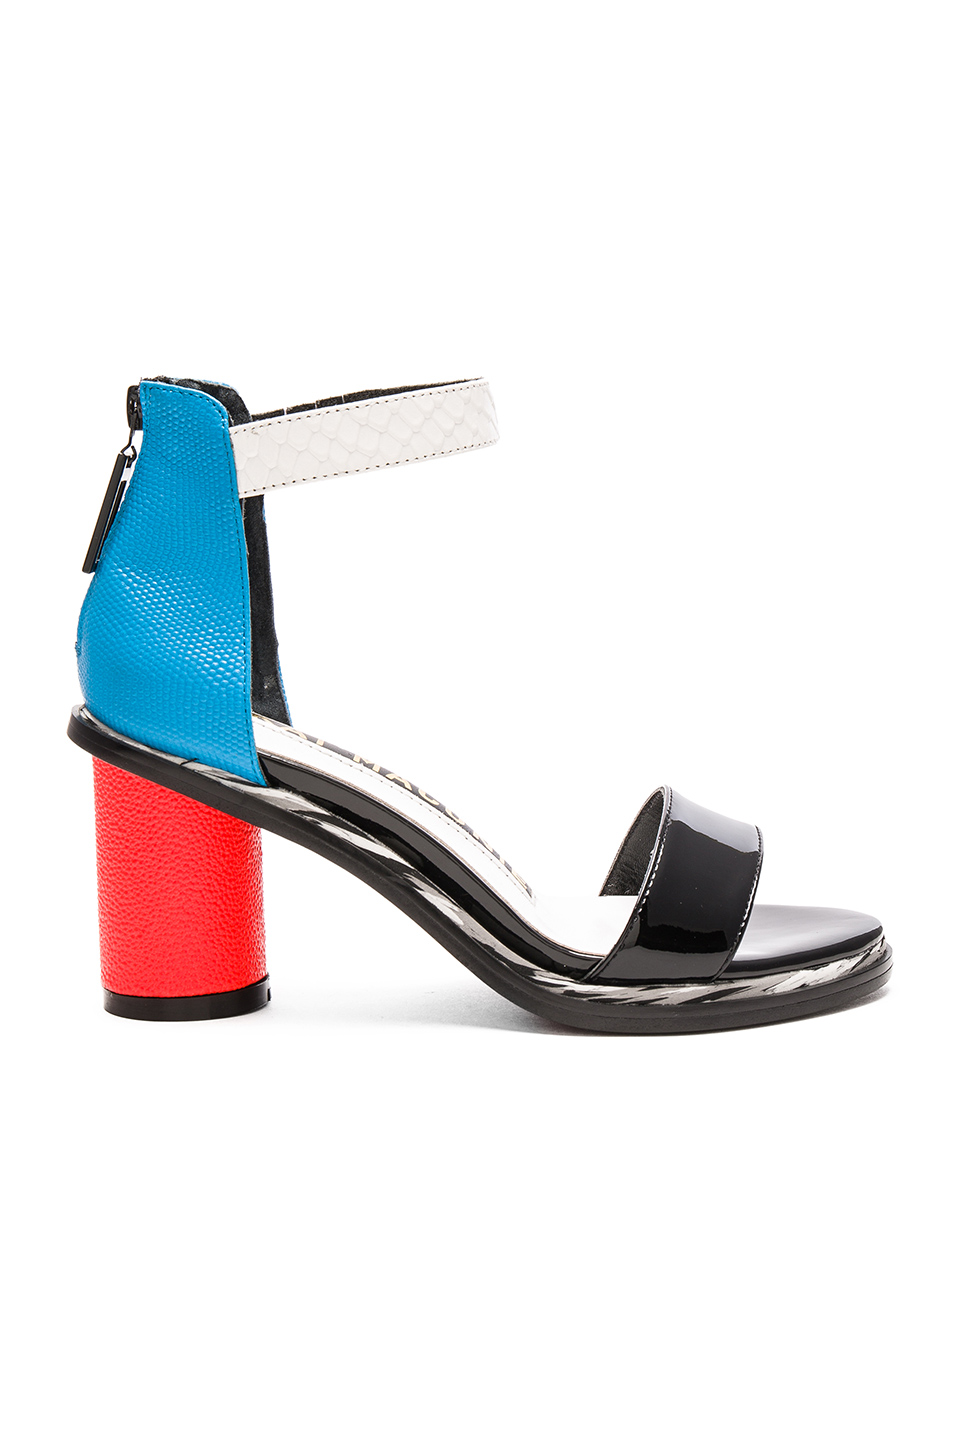 Kat Maconie Neive Sandal In Red, Blue, Black, & White | ModeSens